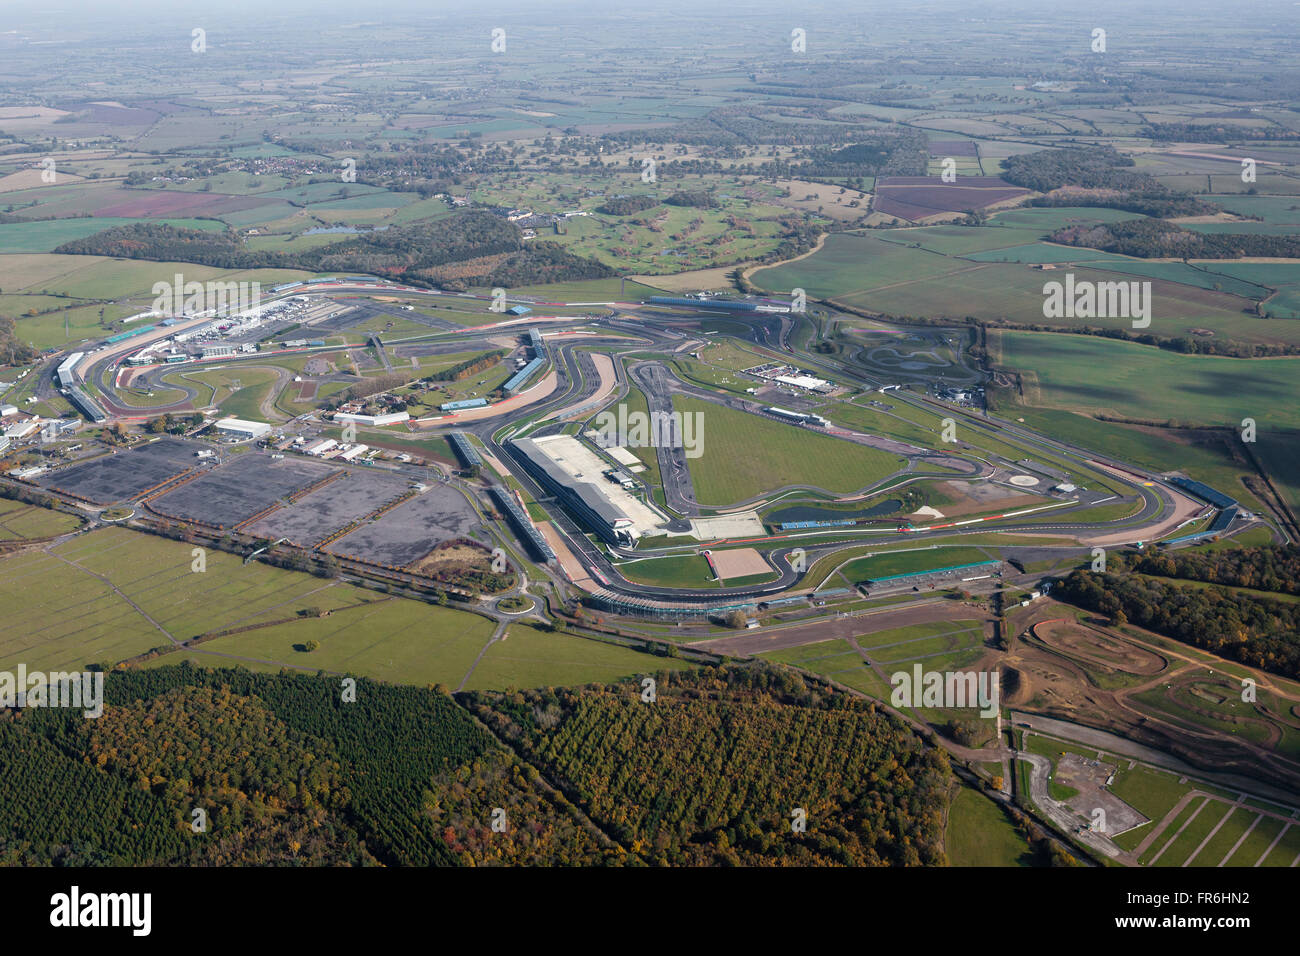 Il Silverstone pista auto usata per la formula uno f1 nel Regno Unito dall'aria. Foto Stock